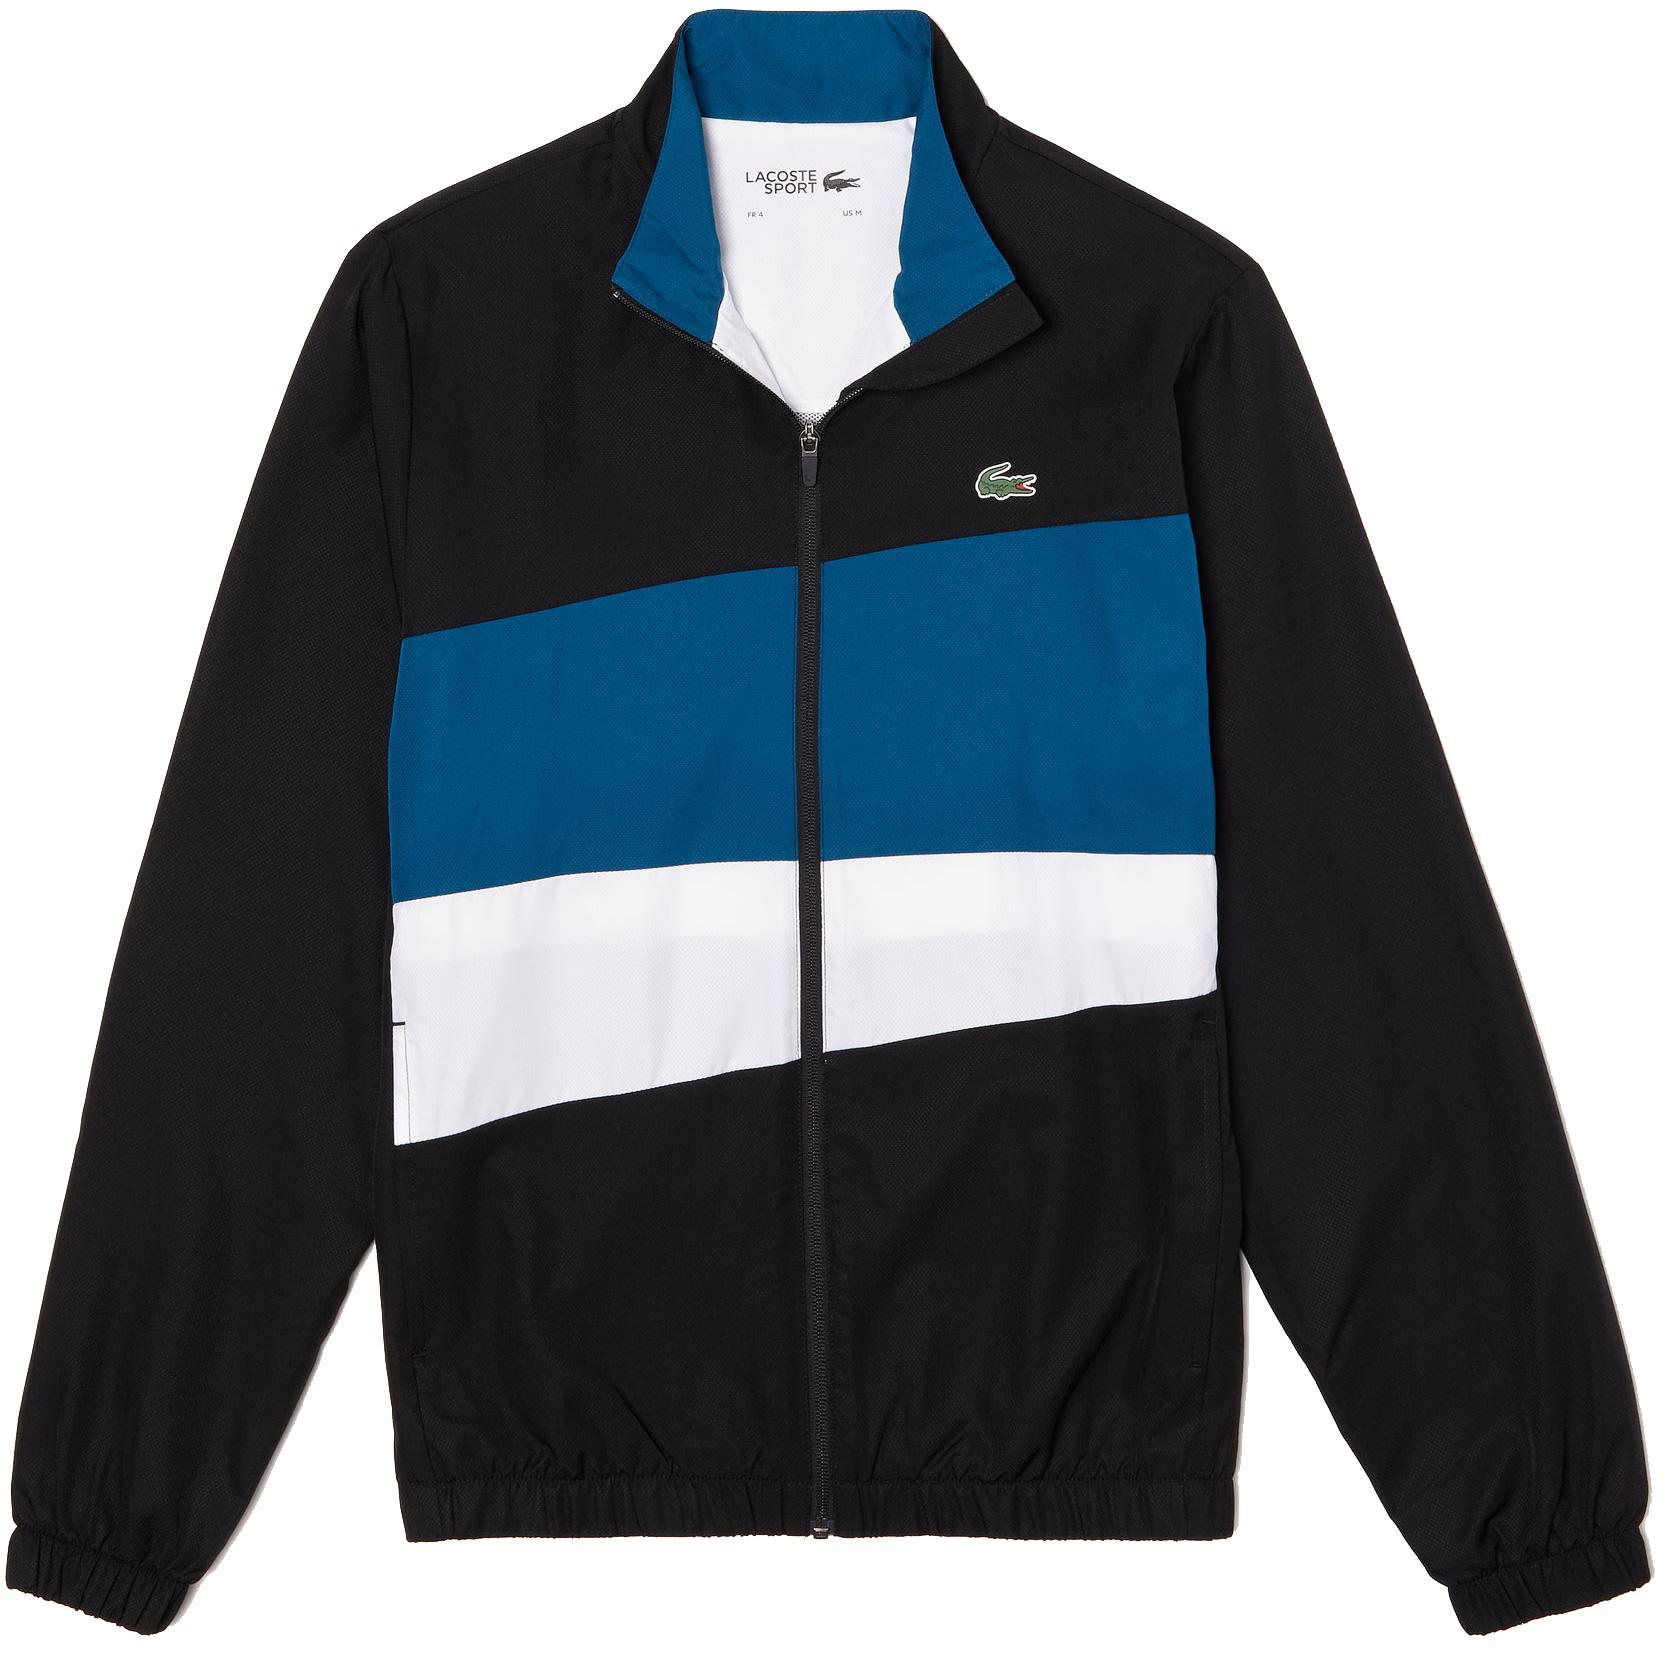 Lacoste Mens Colourblock Sweatsuit - Black/Blue/White - Tennisnuts.com